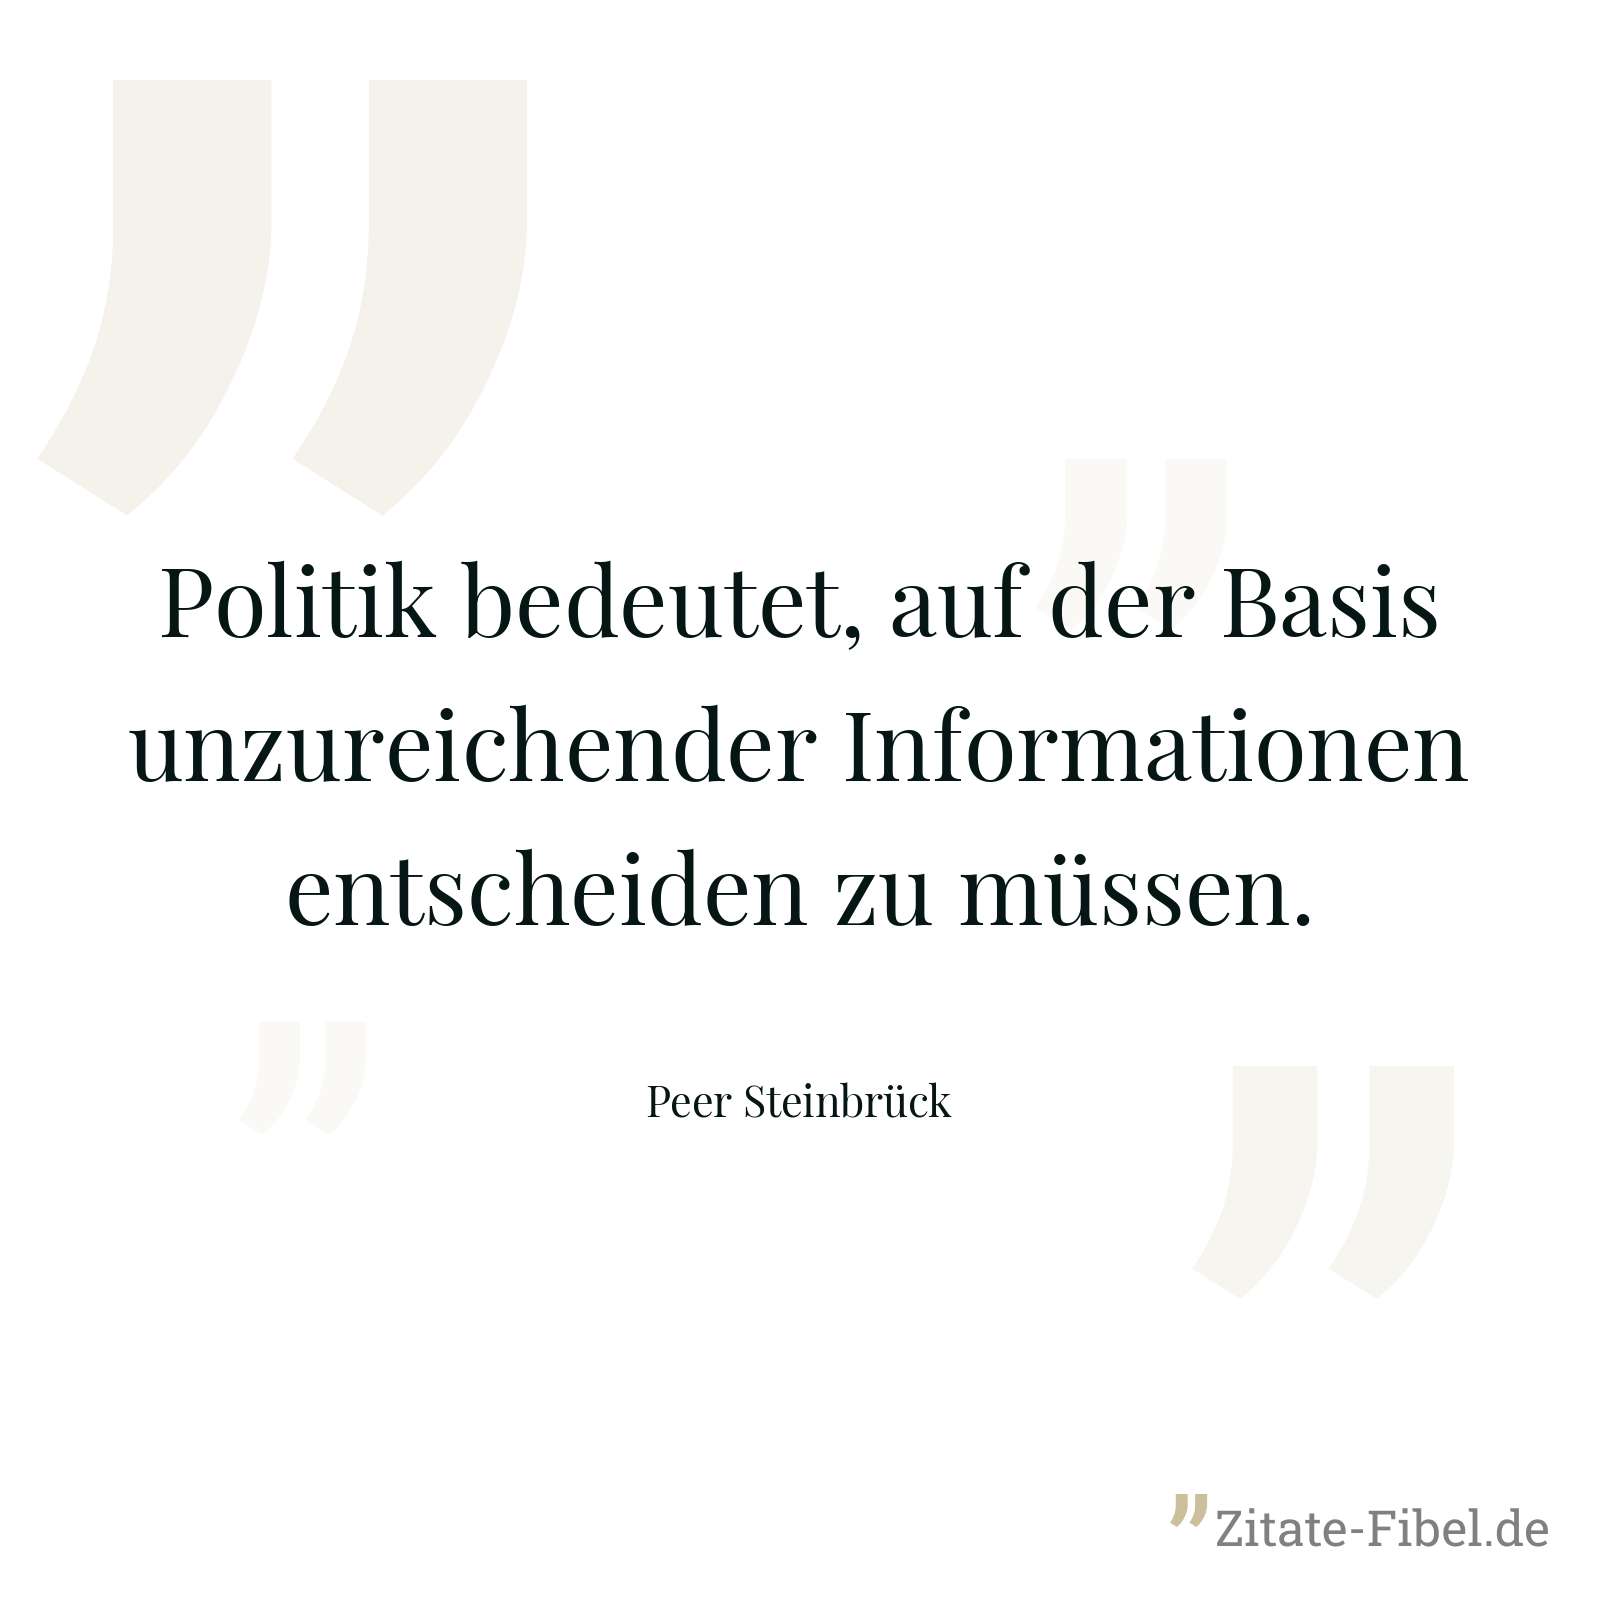 Politik bedeutet, auf der Basis unzureichender Informationen entscheiden zu müssen. - Peer Steinbrück